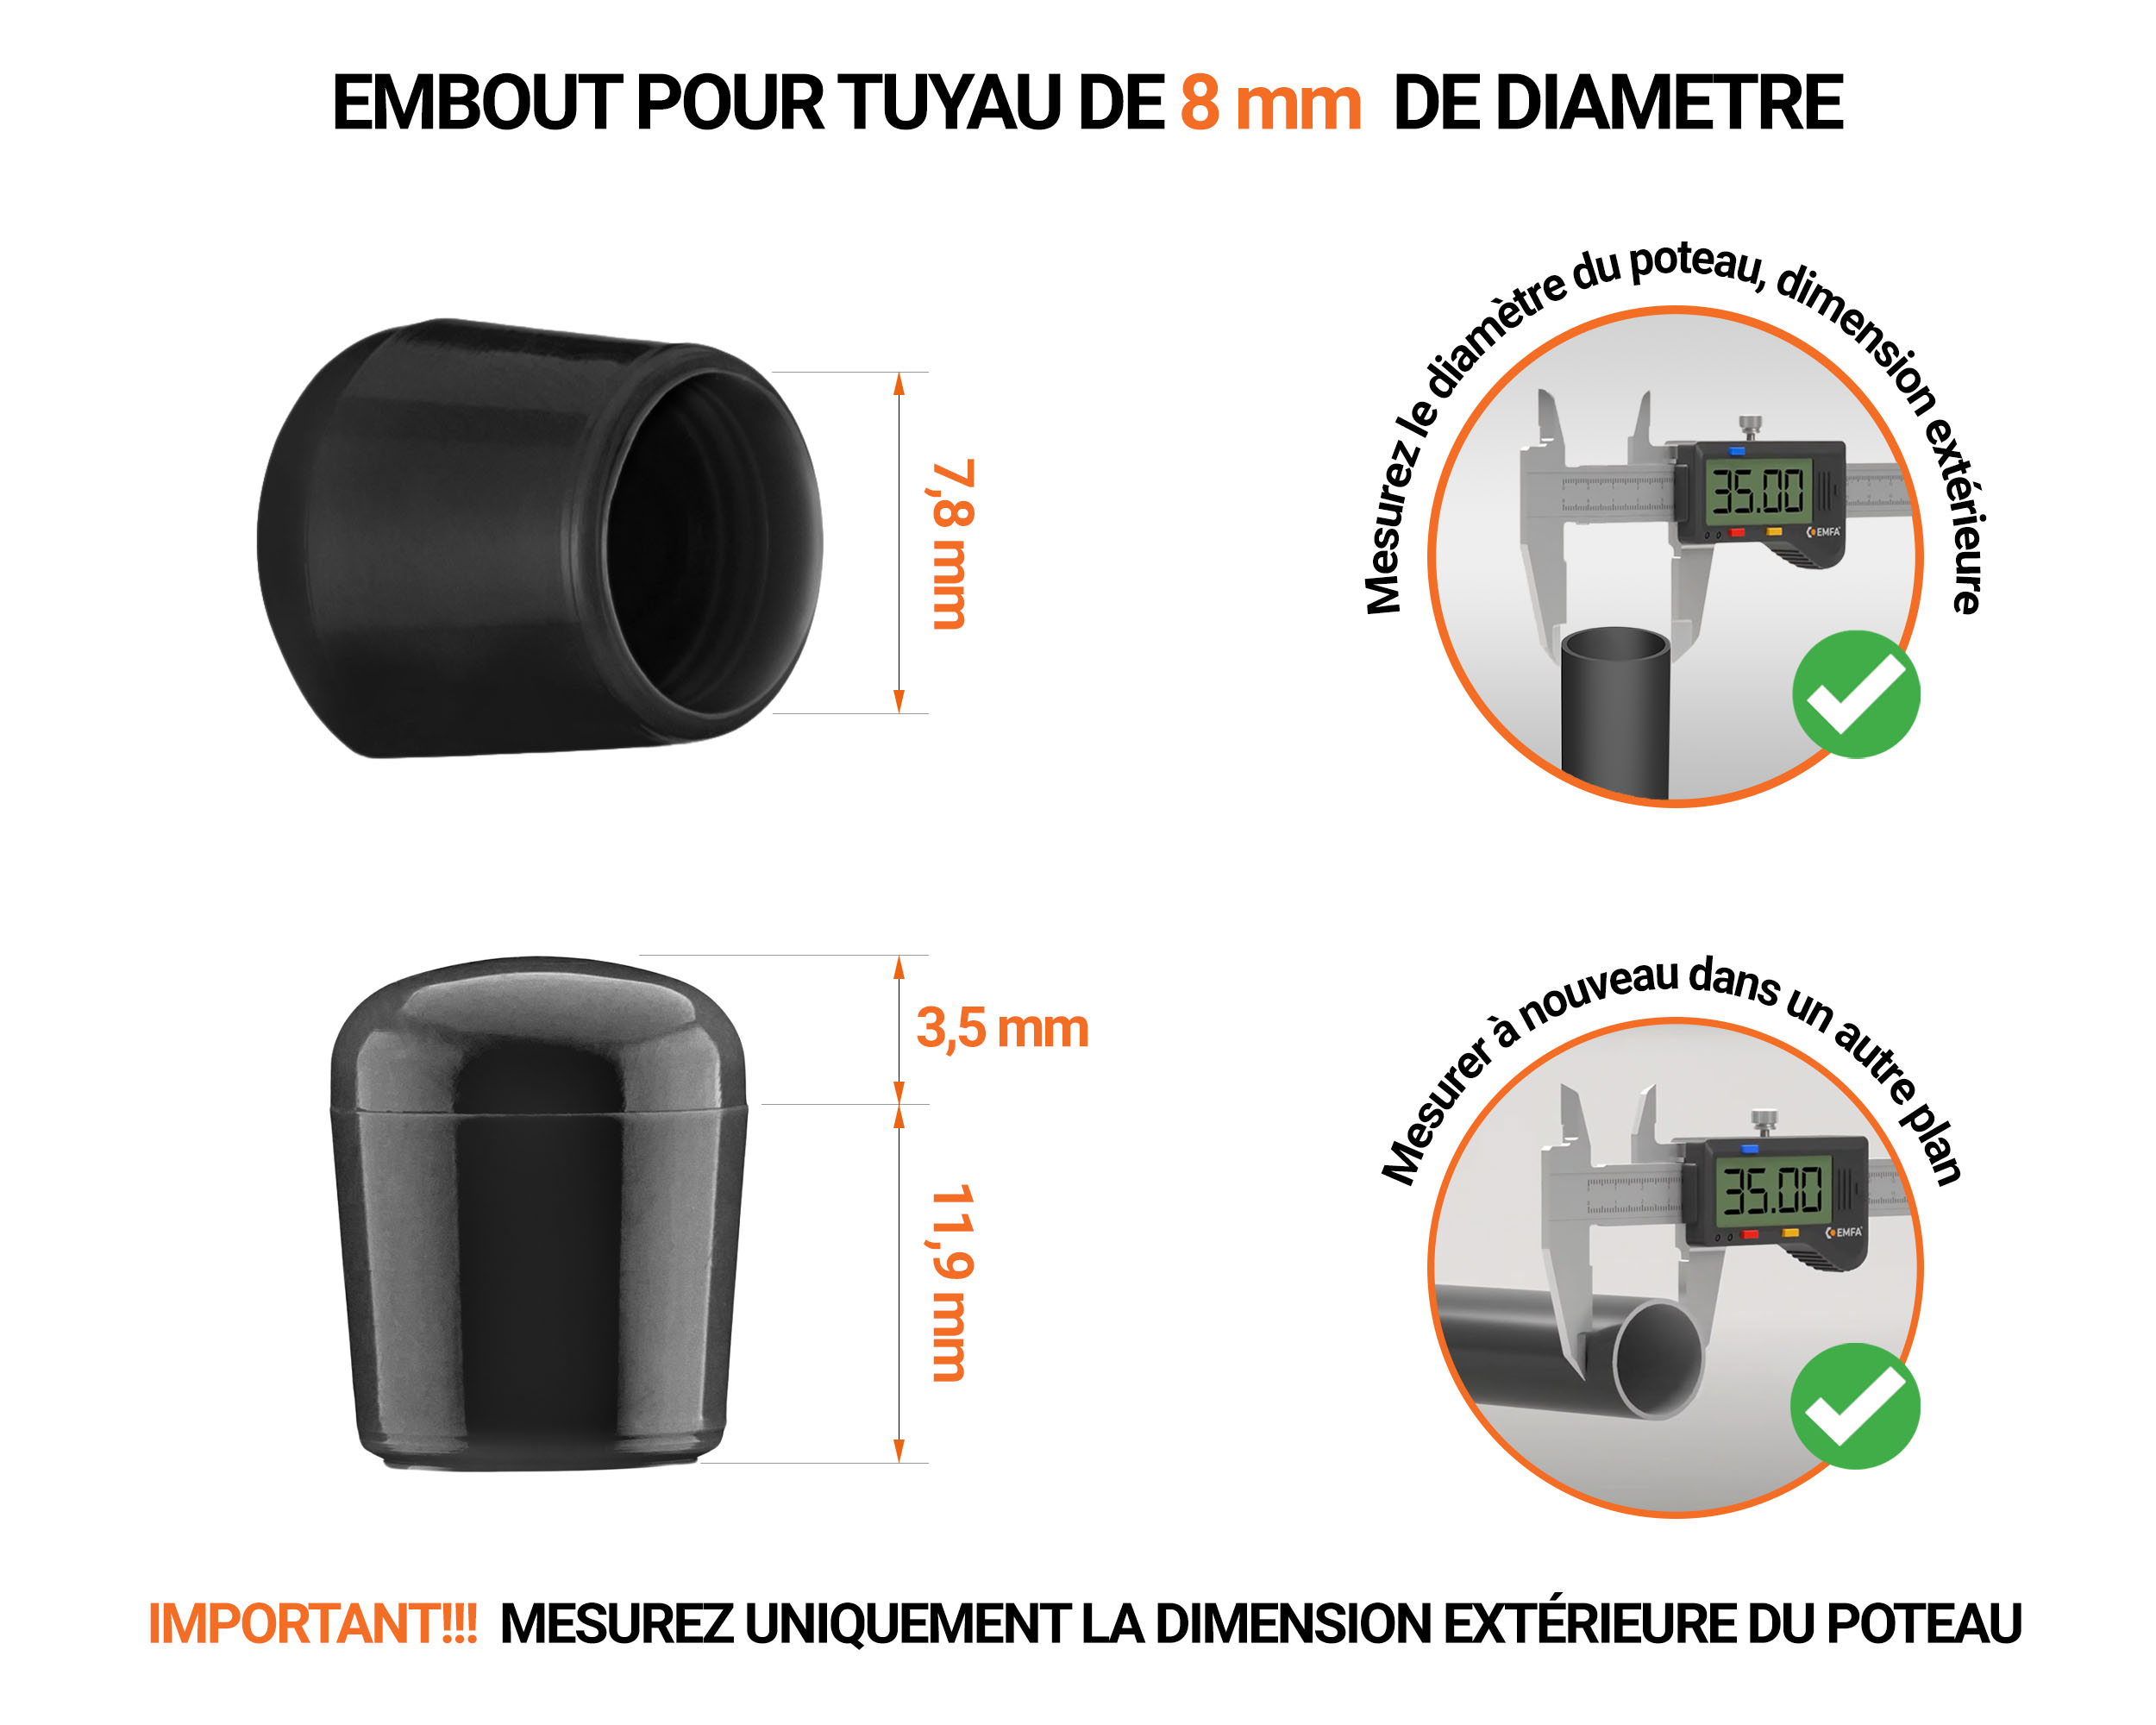 Embout noir de diamètre extérieur 8 mm pour tube rond avec dimensions et guide de mesure correcte du bouchon plastique.